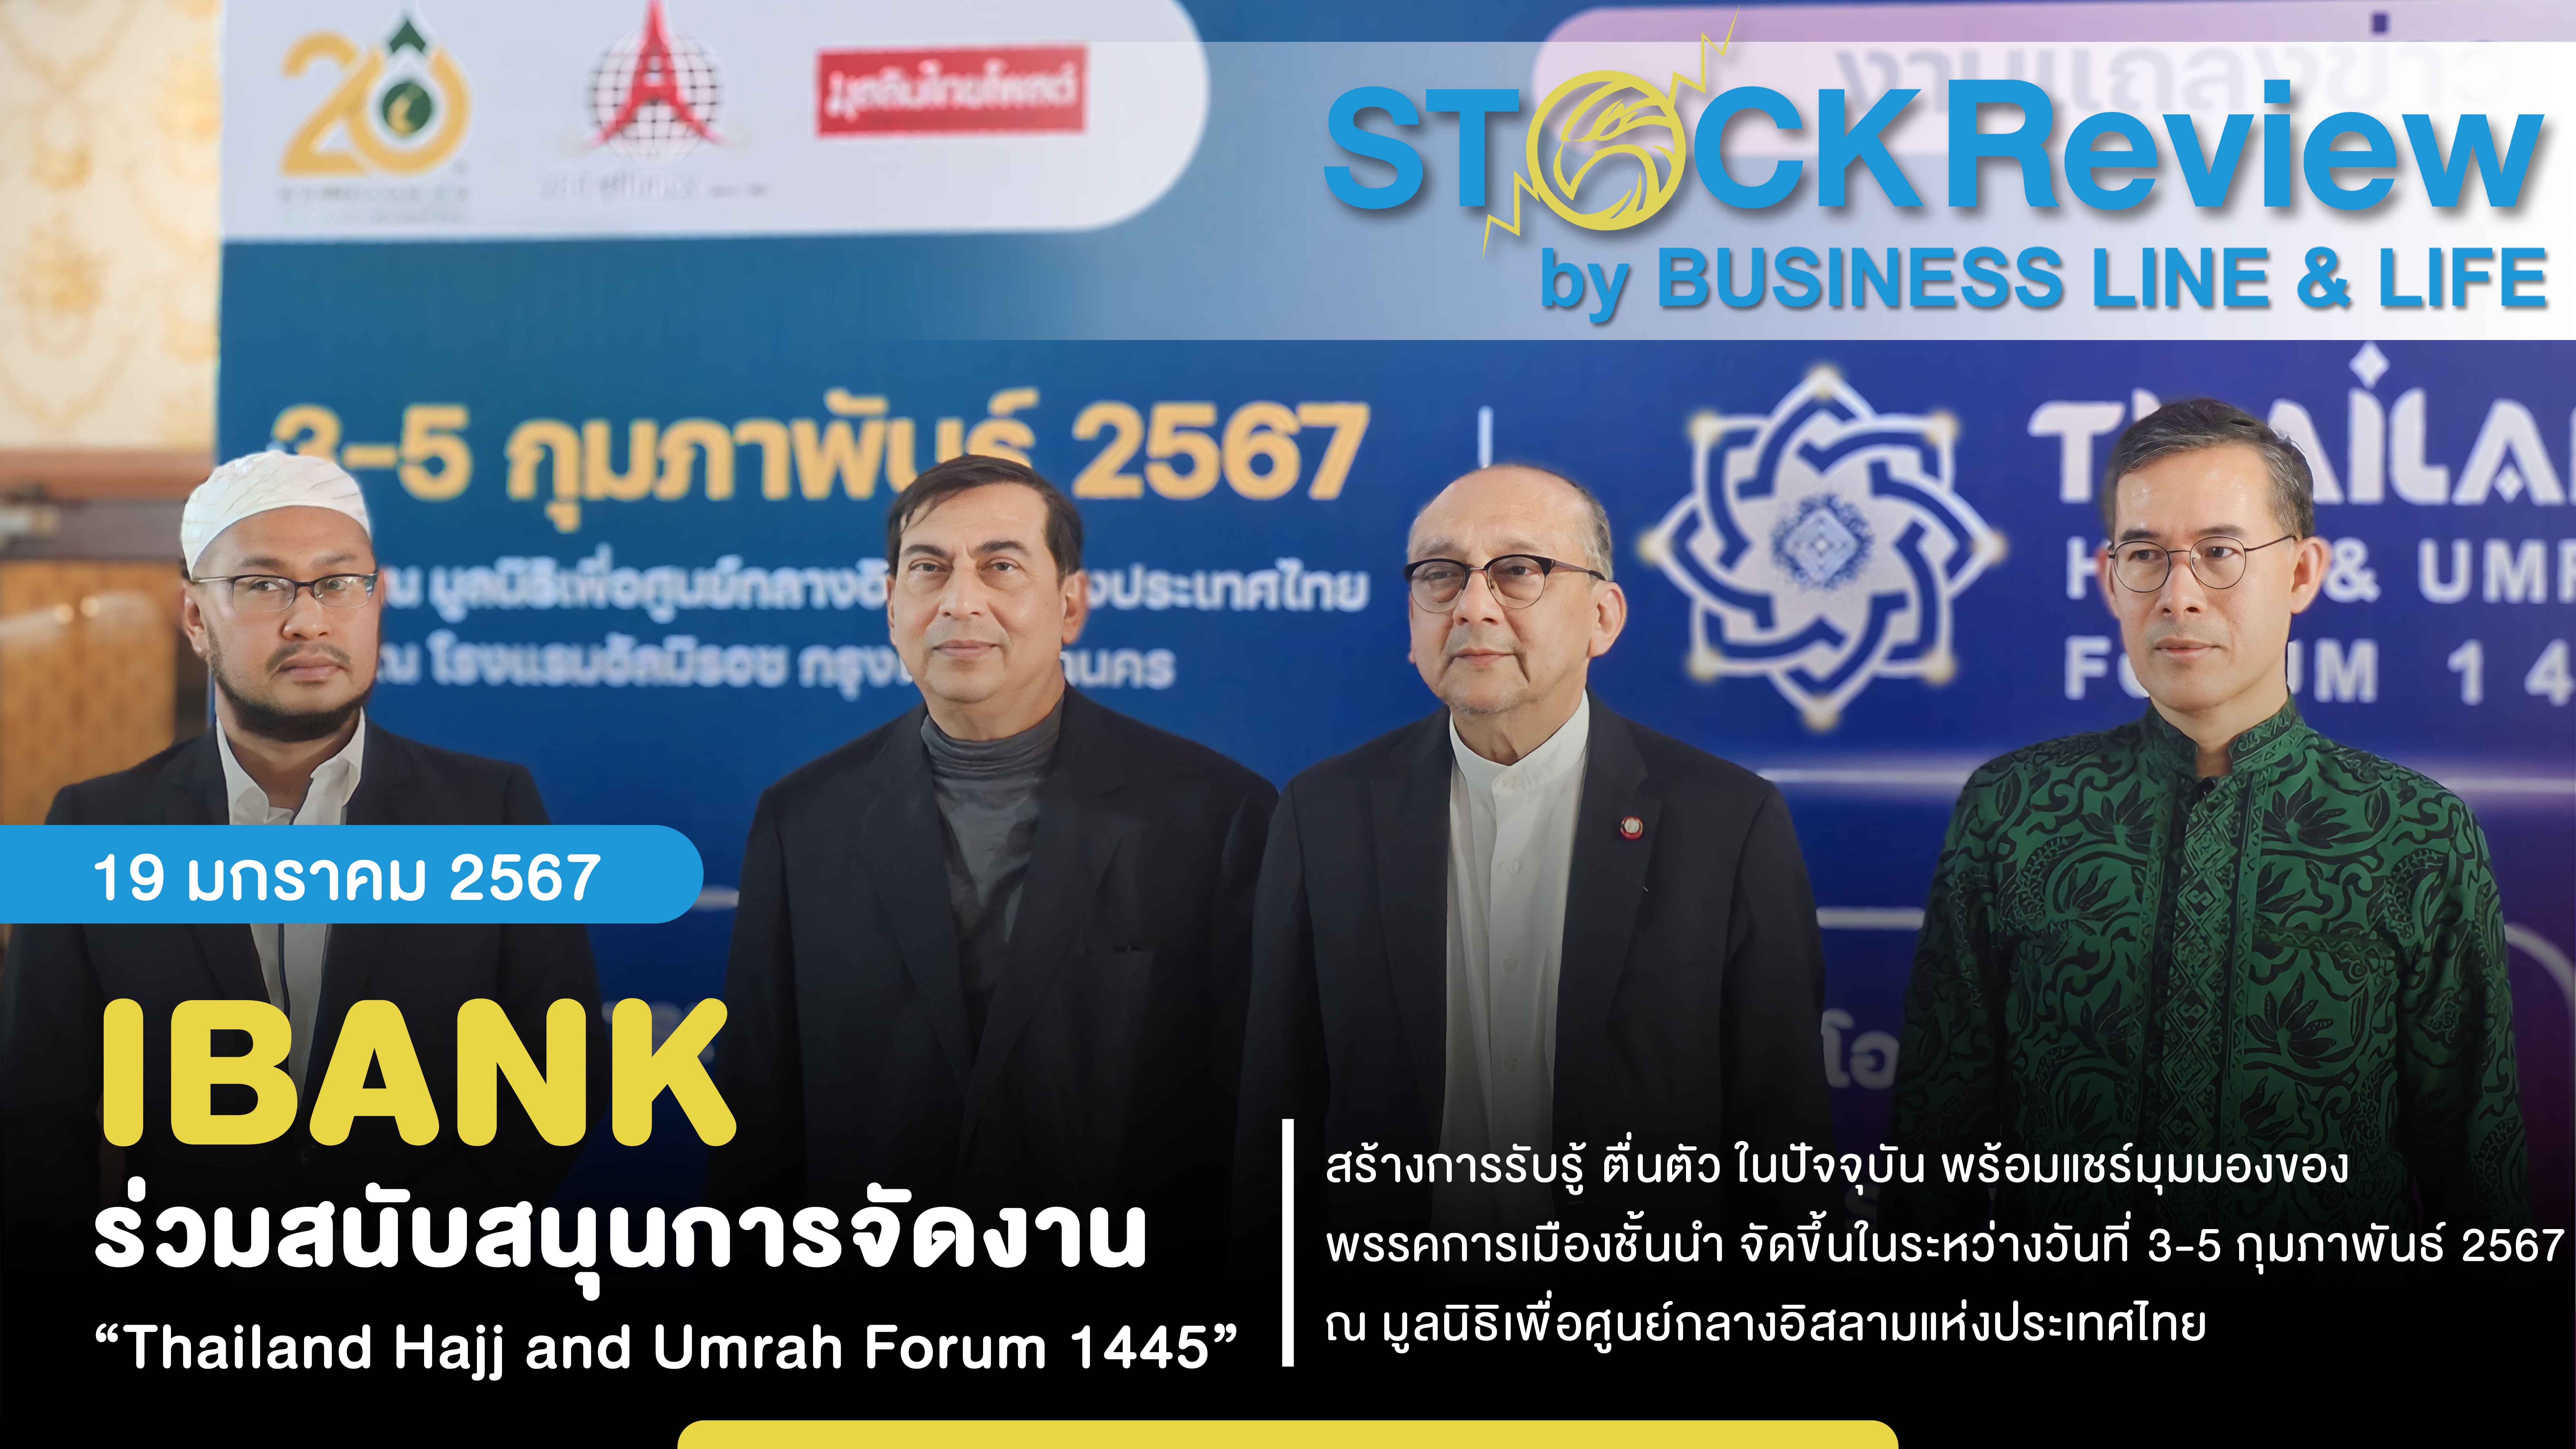 IBANK ร่วมสนับสนุนการจัดงาน “Thailand Hajj and Umrah Forum 1445” ระหว่างวันที่ 3-5 กุมภาพันธ์ 2567